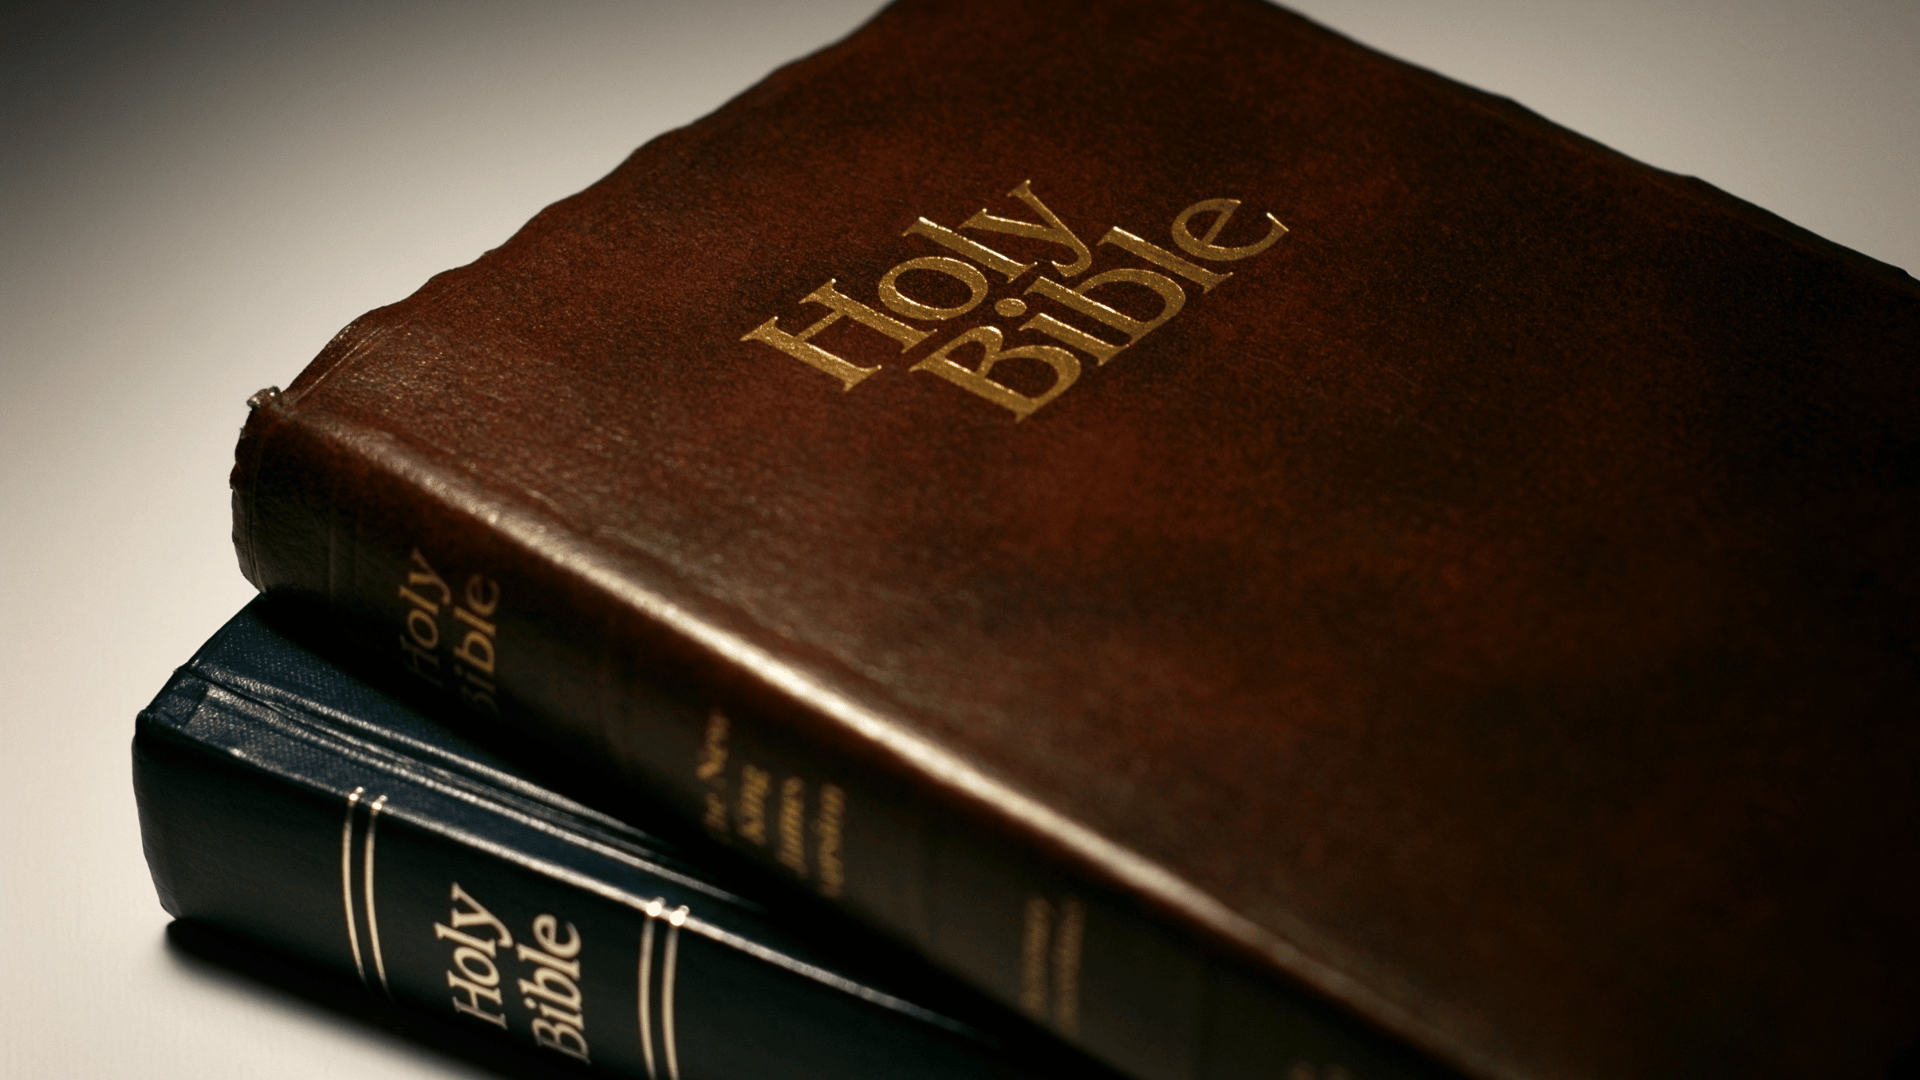 Duas bíblia sagradas, uma sobre a outra. Há um livro em capa dura marrom e outro preto, ambos em couro.